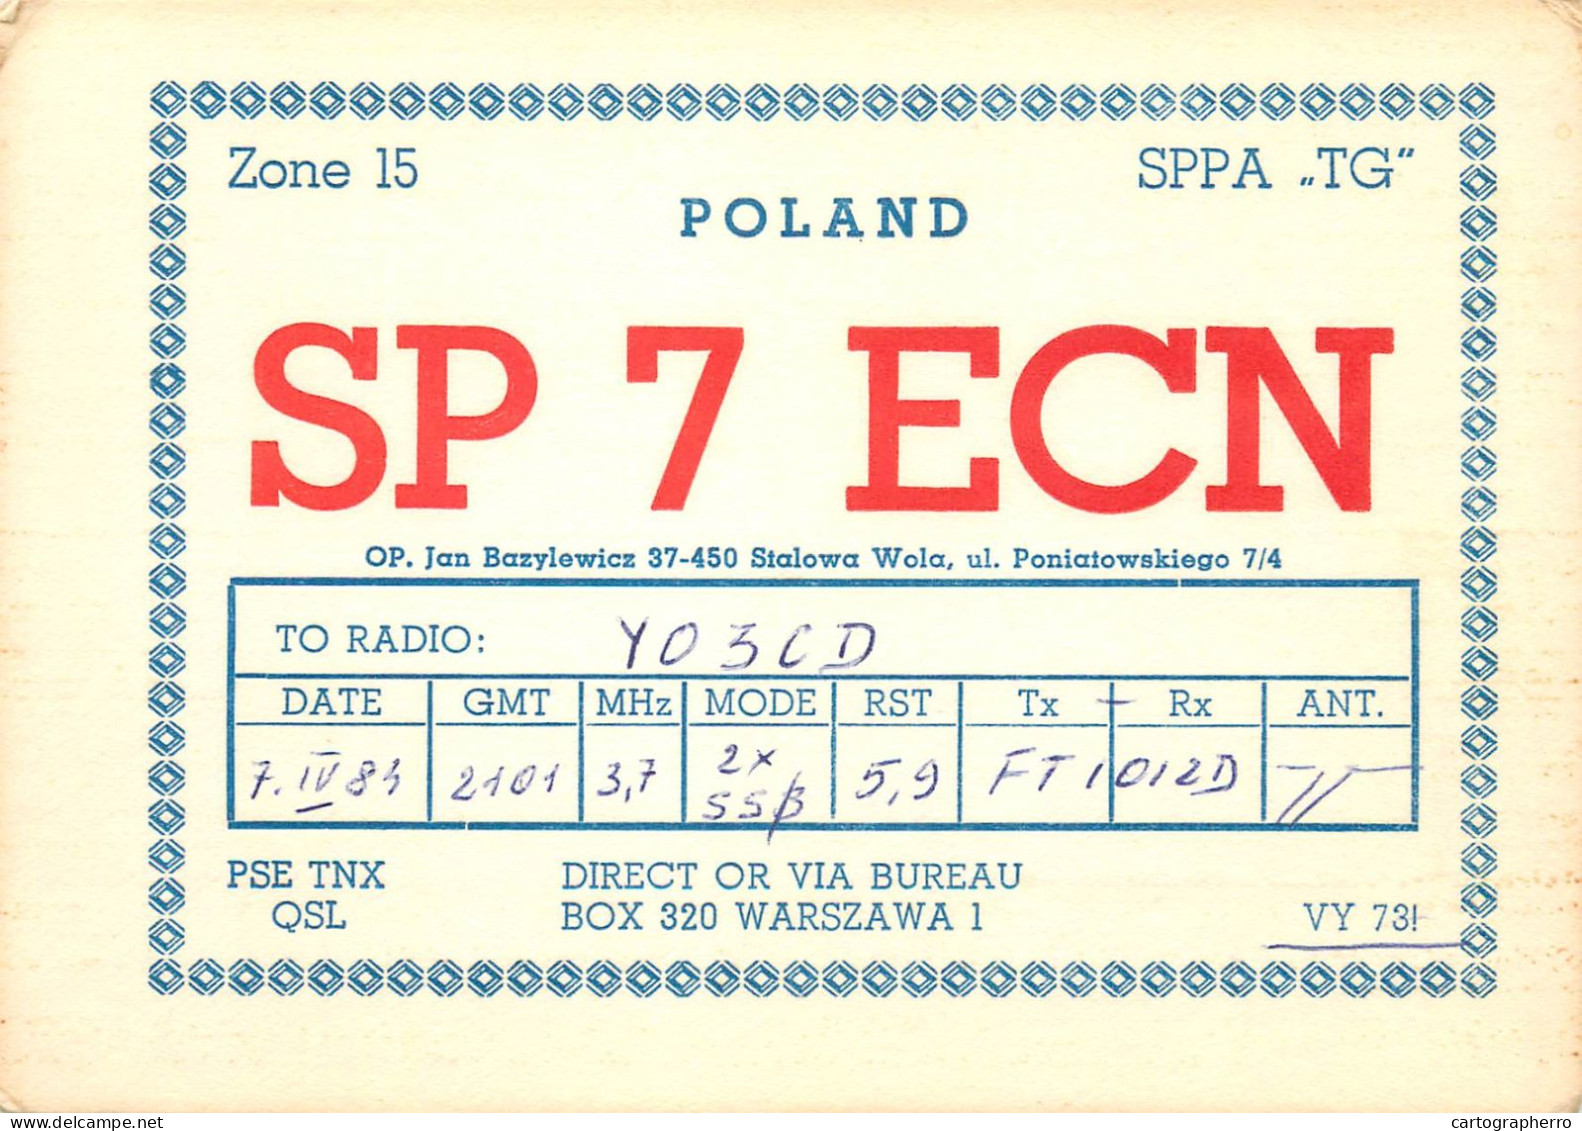 Polish Amateur Radio Station QSL Card Poland Y03CD SP7ECN - Amateurfunk